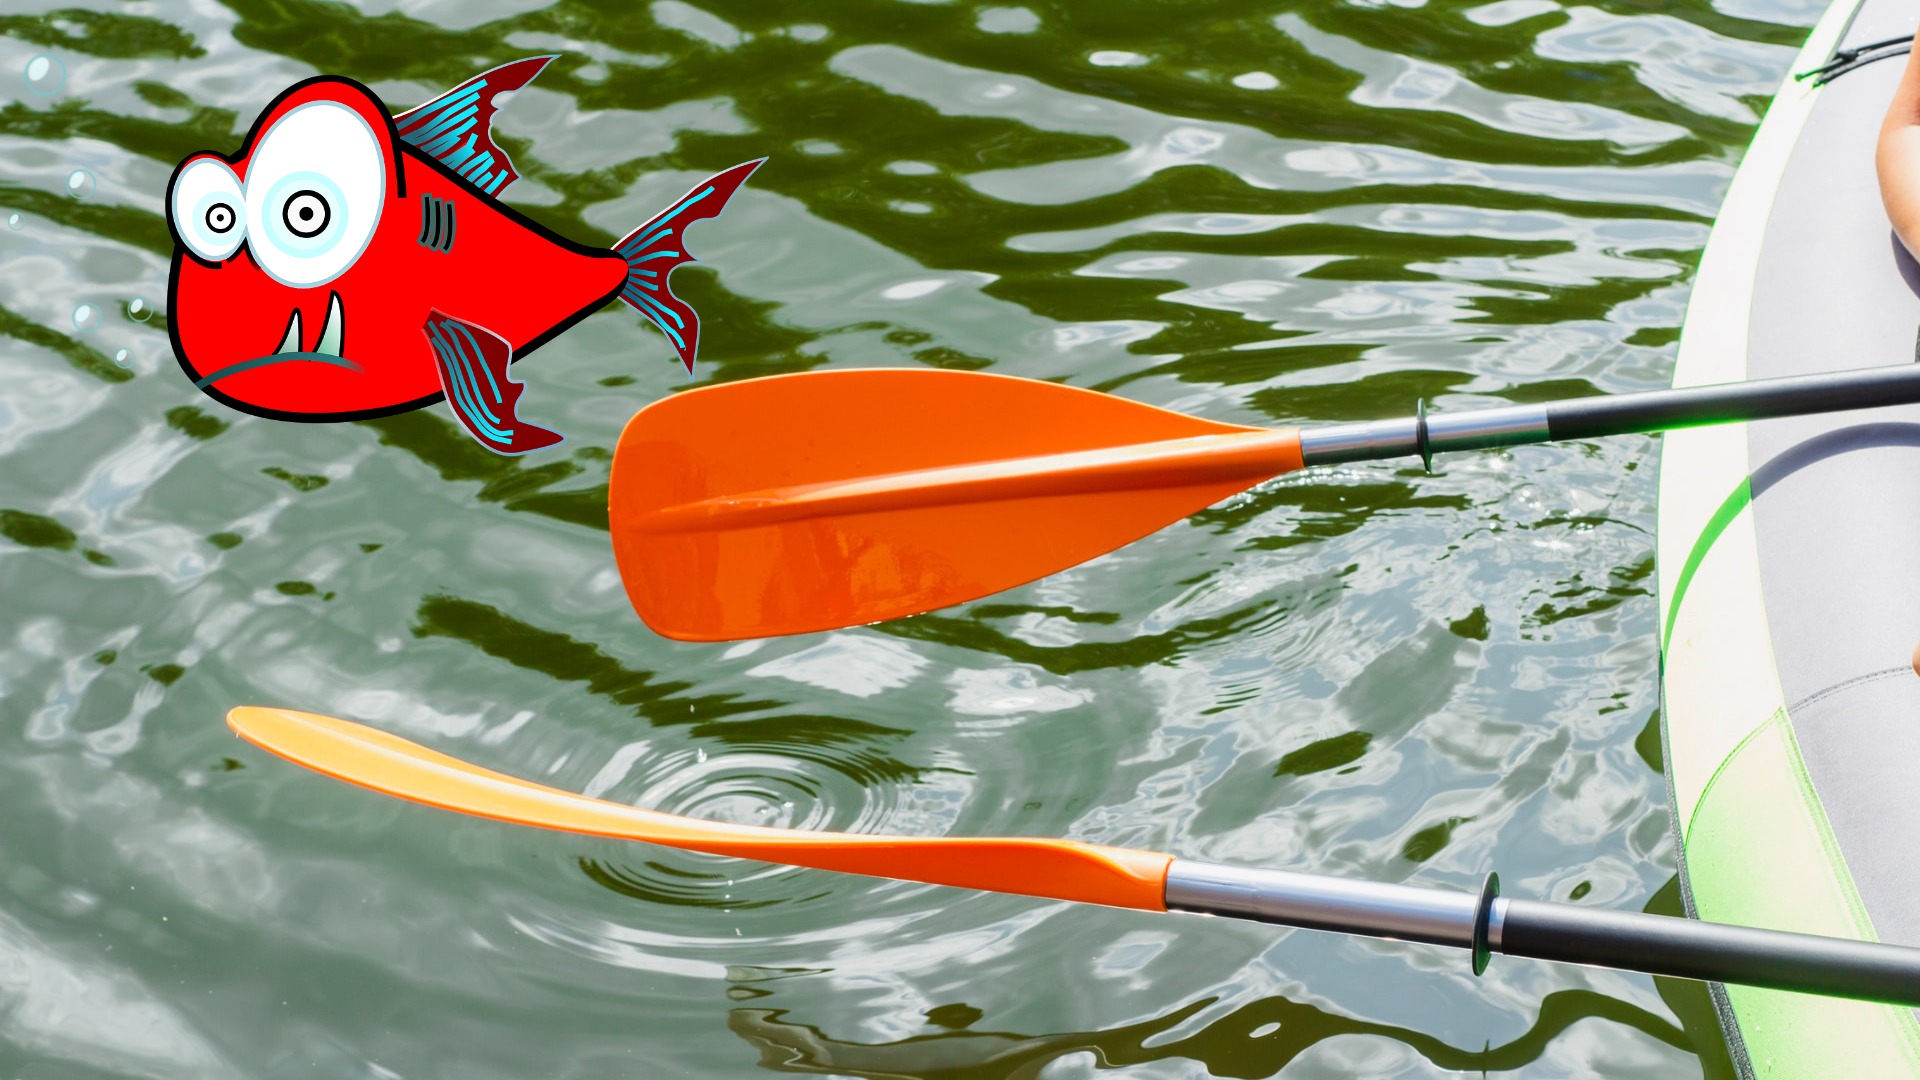  Elkton Outdoors Steelhead Inflatable Fishing Kayak